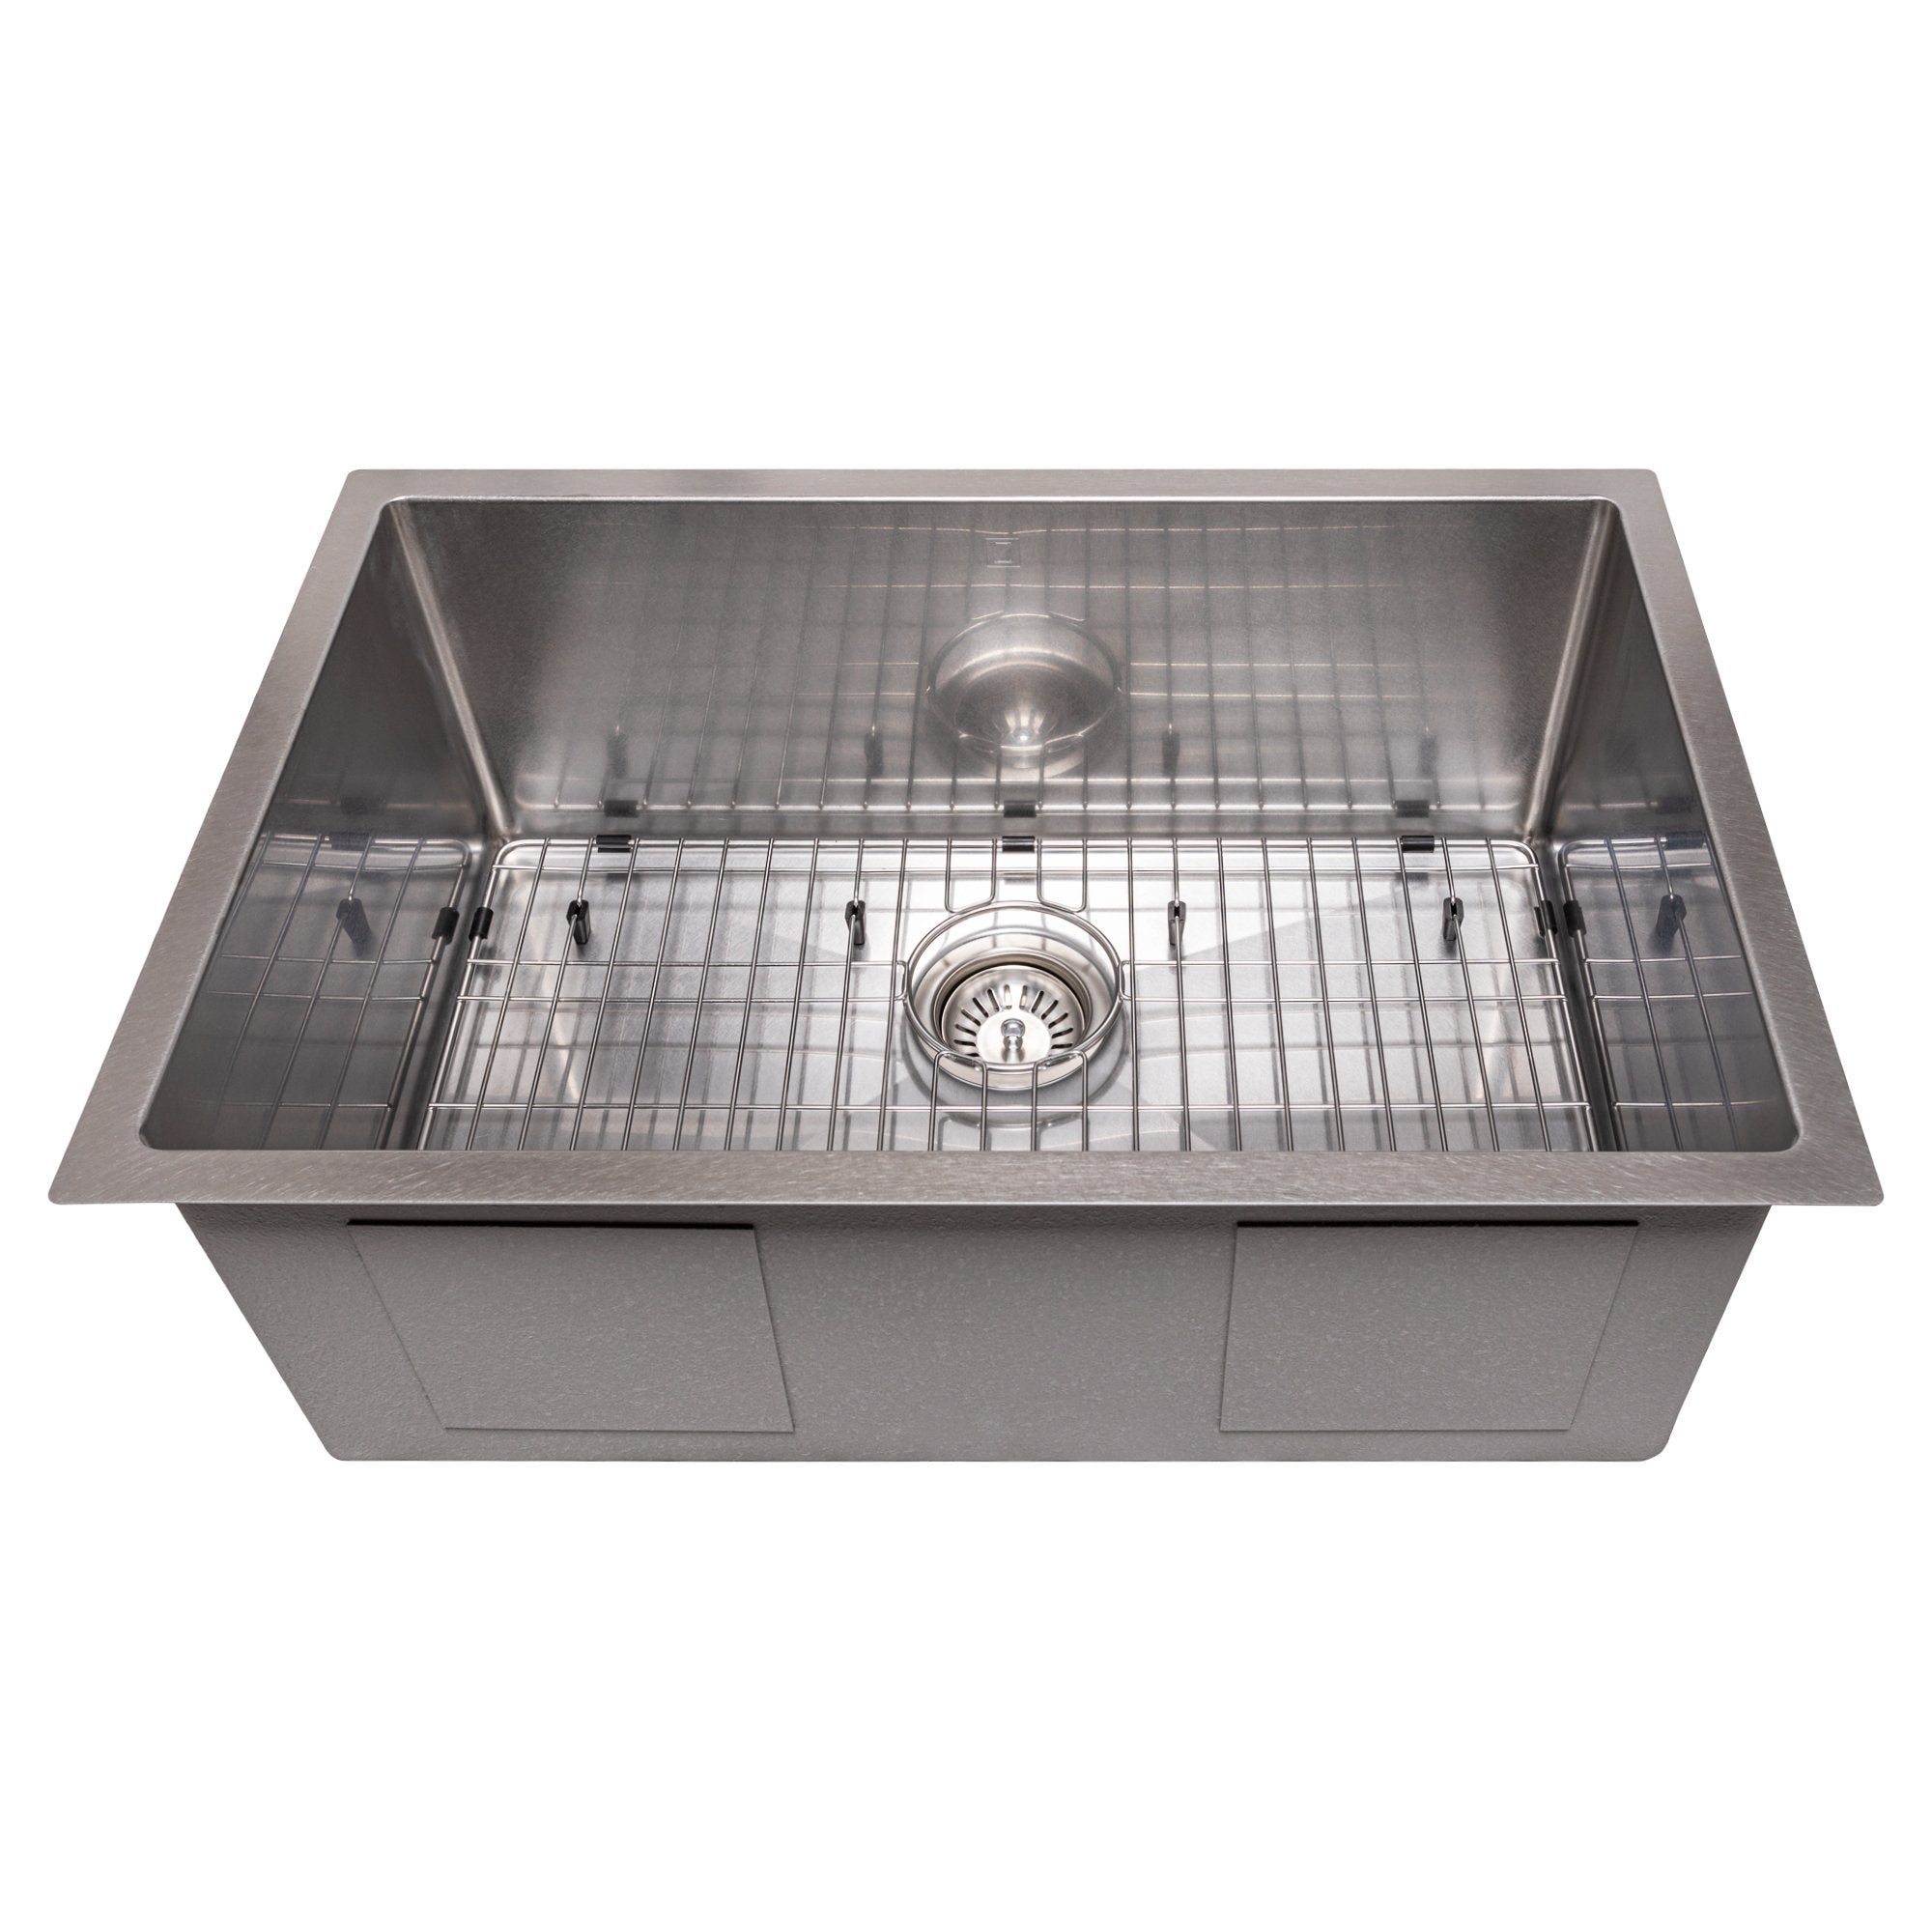 ZLINE 27" Classic Series Undermount Single Bowl Sink (SRS) - Rustic Kitchen & Bath - Sinks - ZLINE Kitchen and Bath